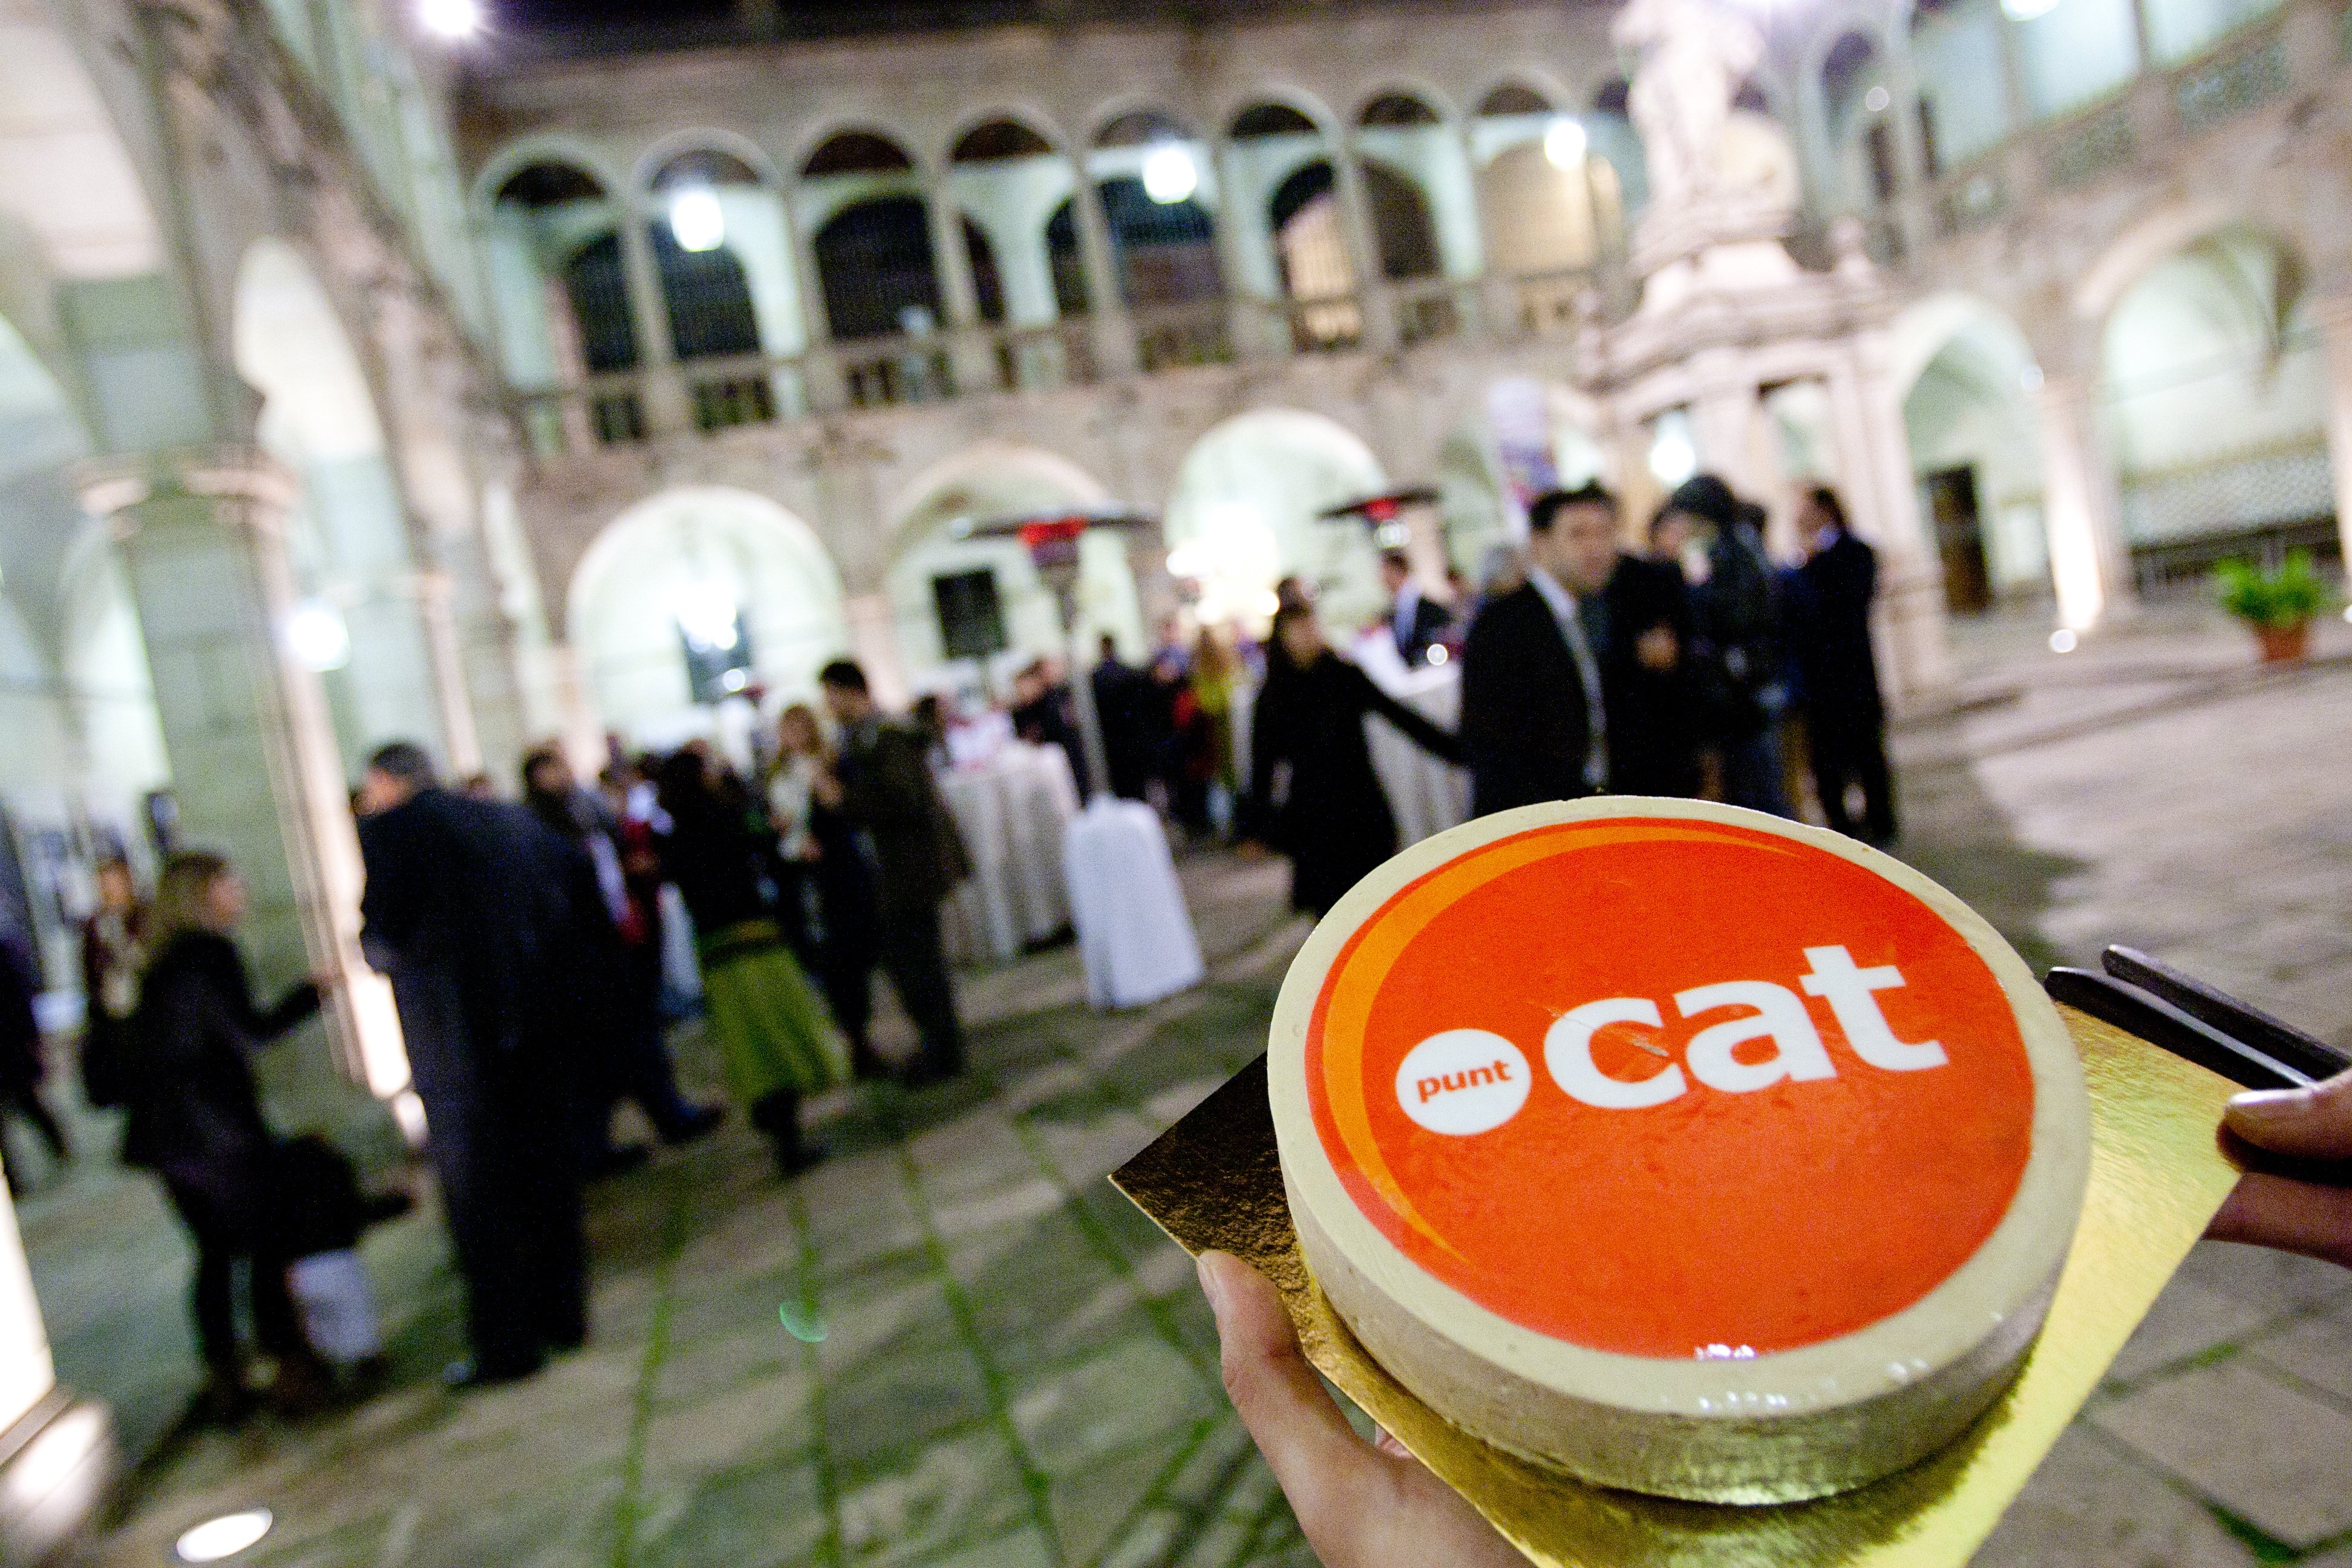 Fundació puntCAT dedicará 160.000€ a ayudas para proyectos digitales